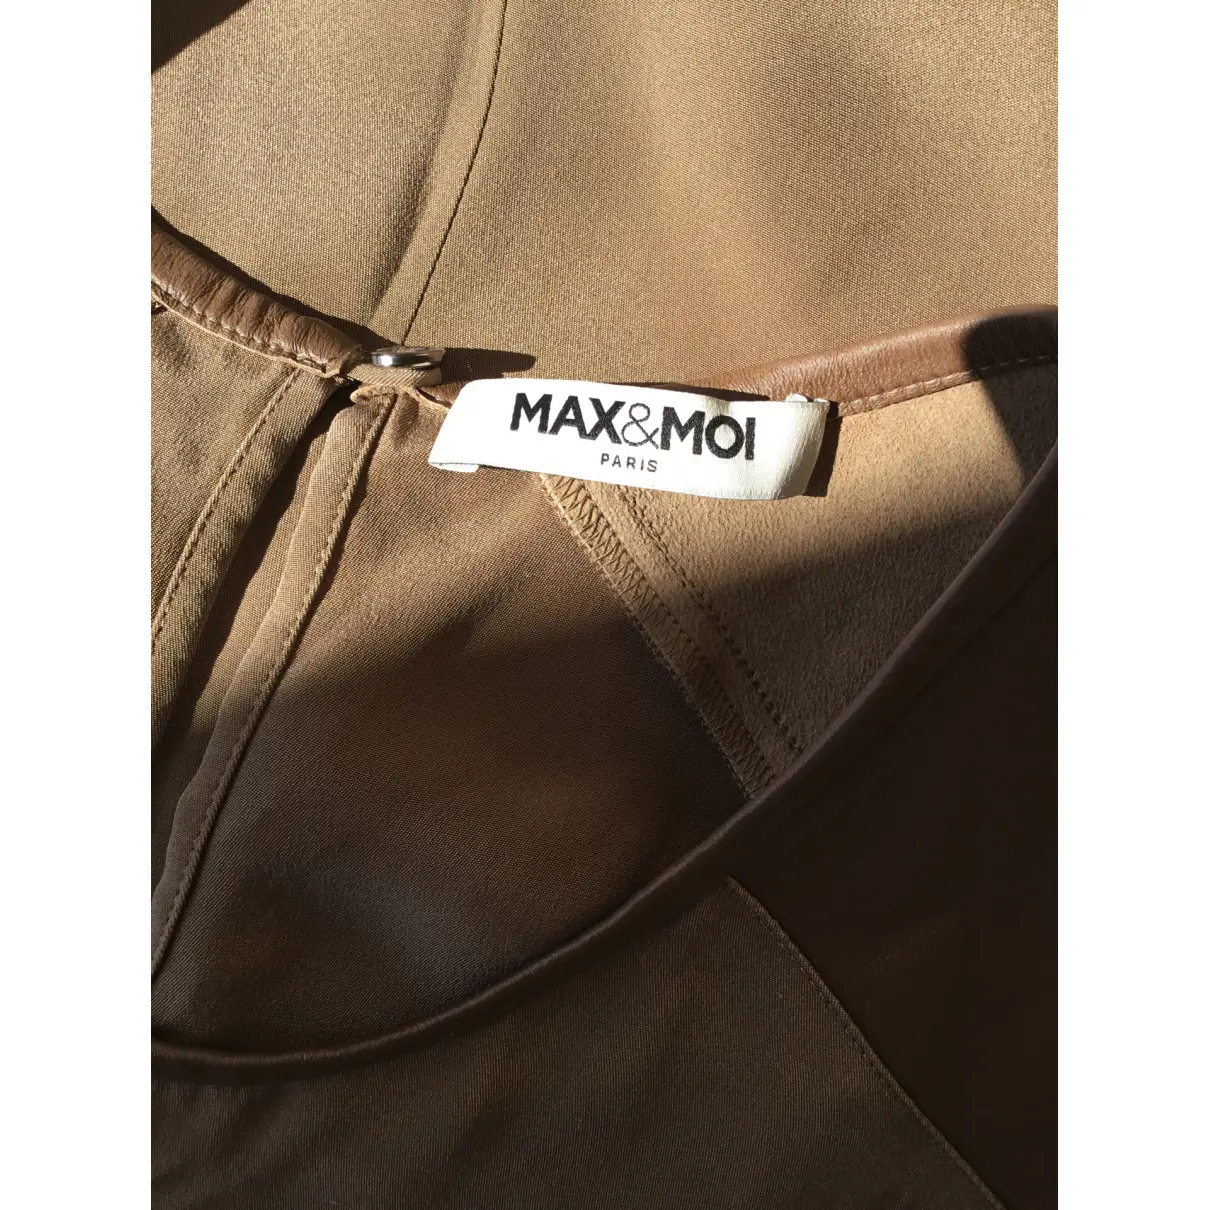 Silk mid-length dress Max & Moi